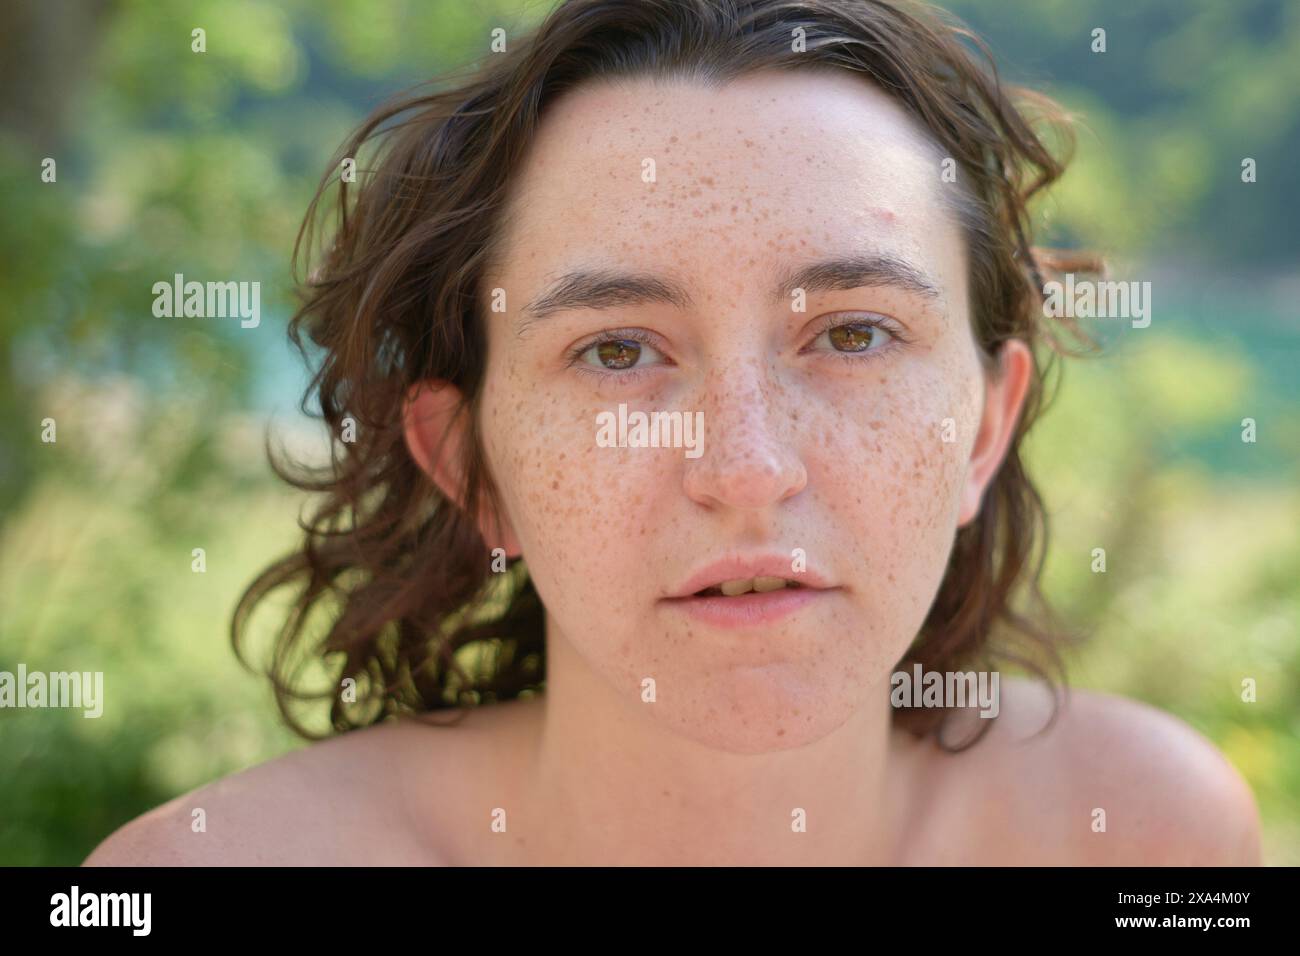 Nahaufnahme eines Porträts einer jungen Frau mit dunklen lockigen Haaren und einem Blick auf die Kamera, vor einem unscharfen grünen Hintergrund. Stockfoto